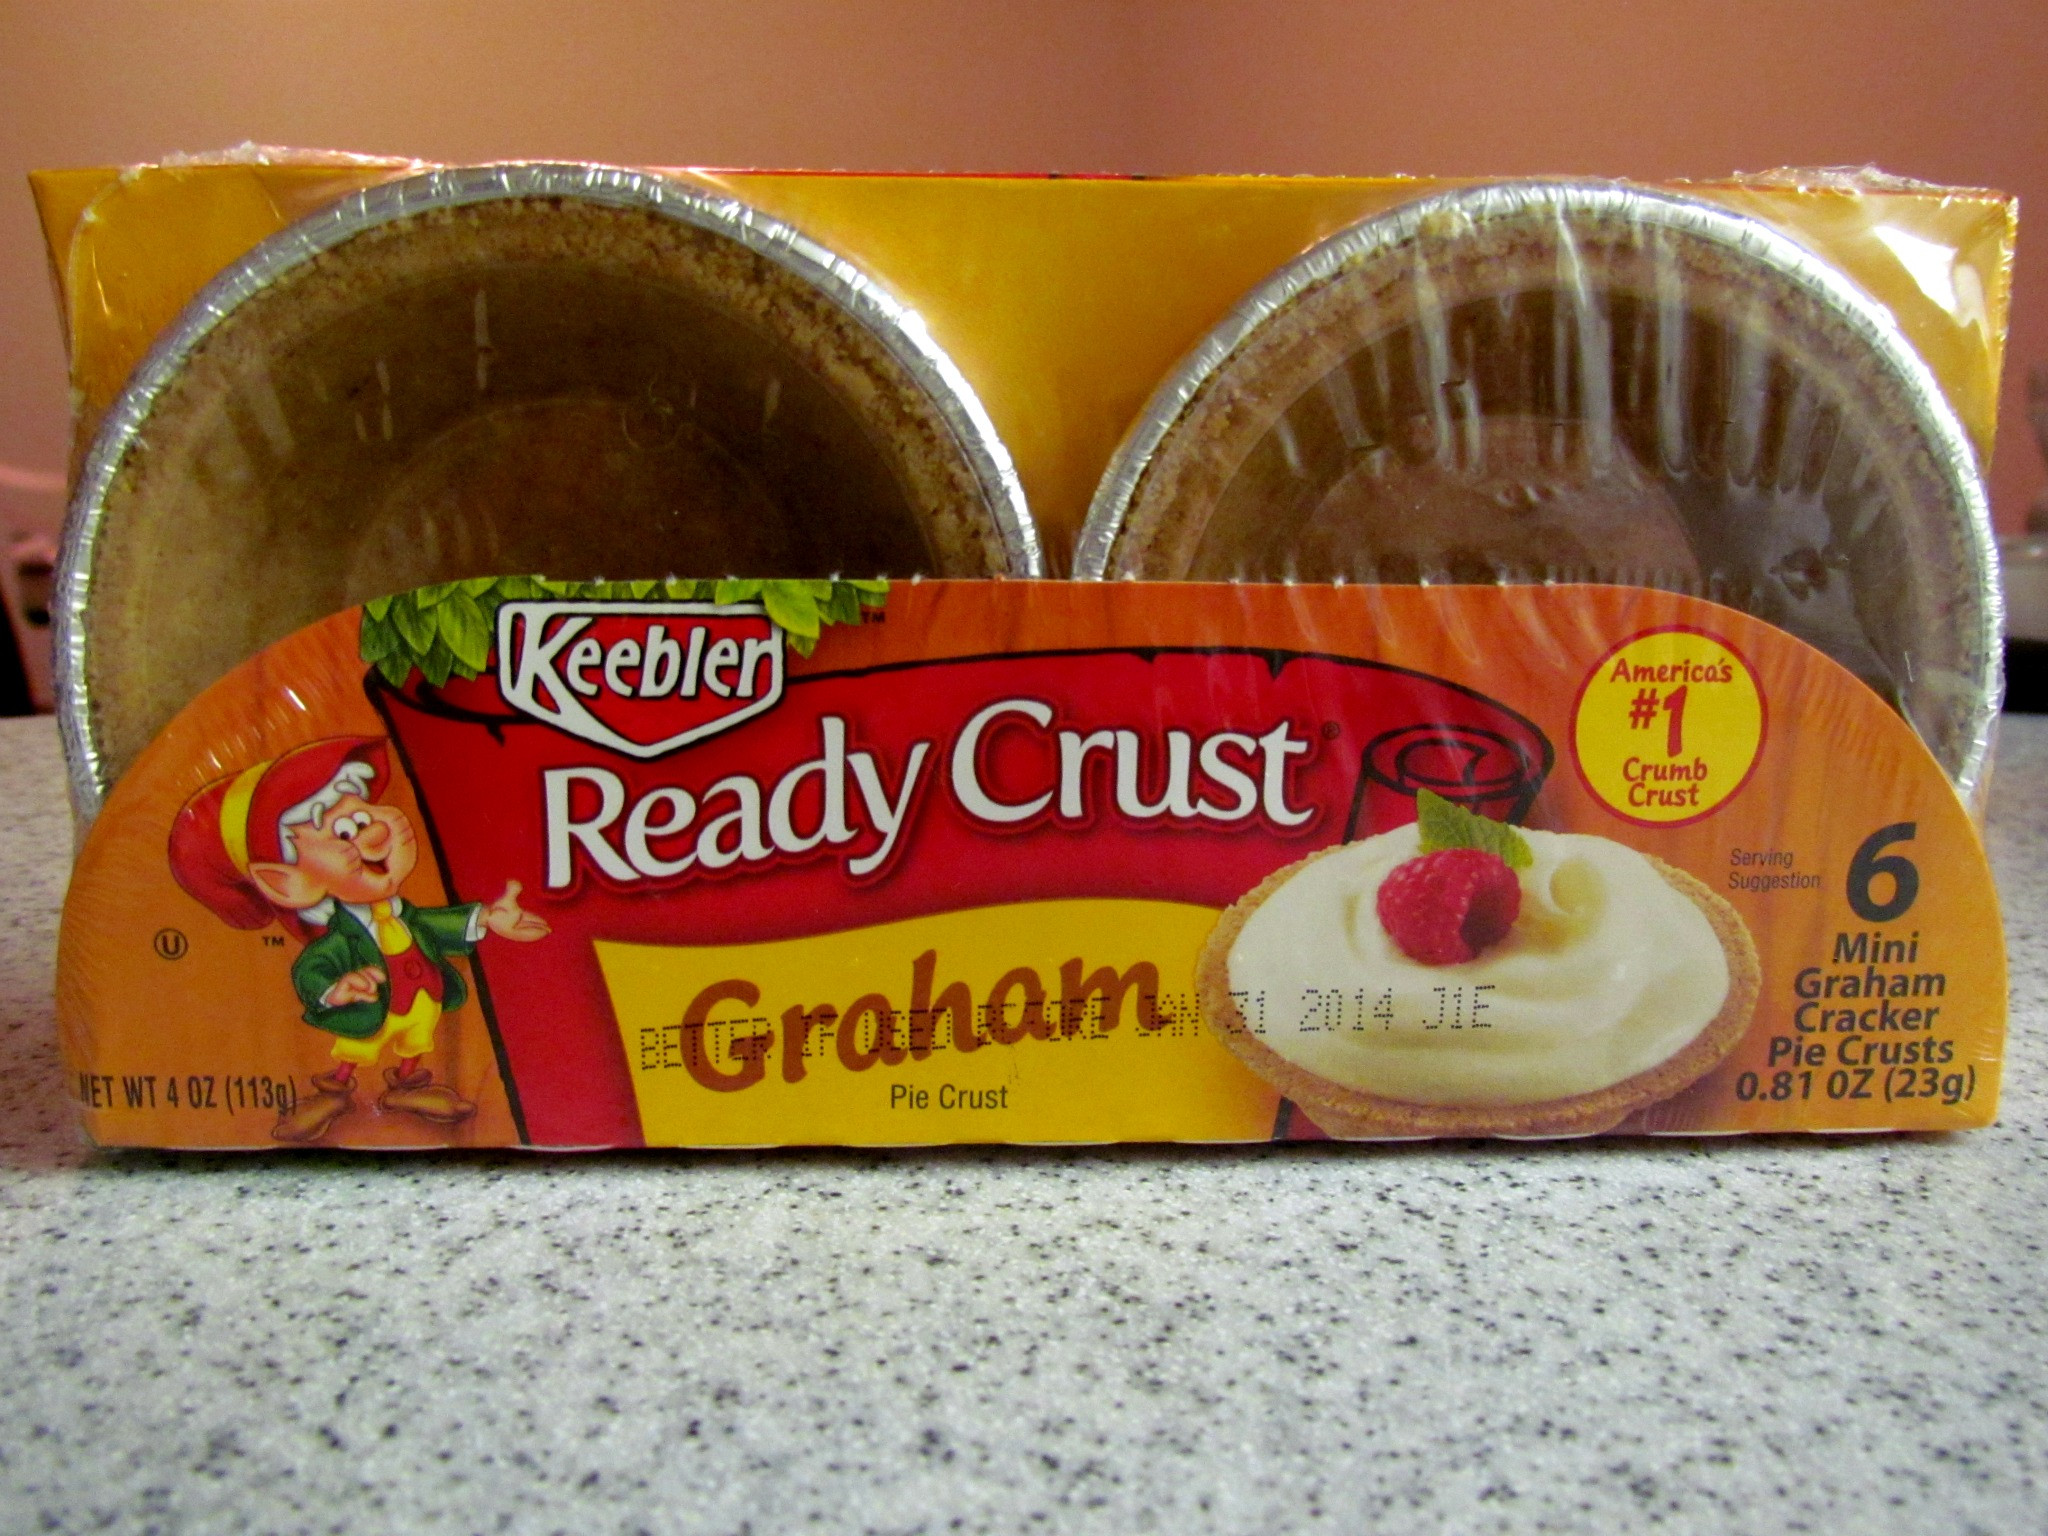 Mini Cheesecake Recipe With Graham Cracker Crust
 keebler graham cracker crust